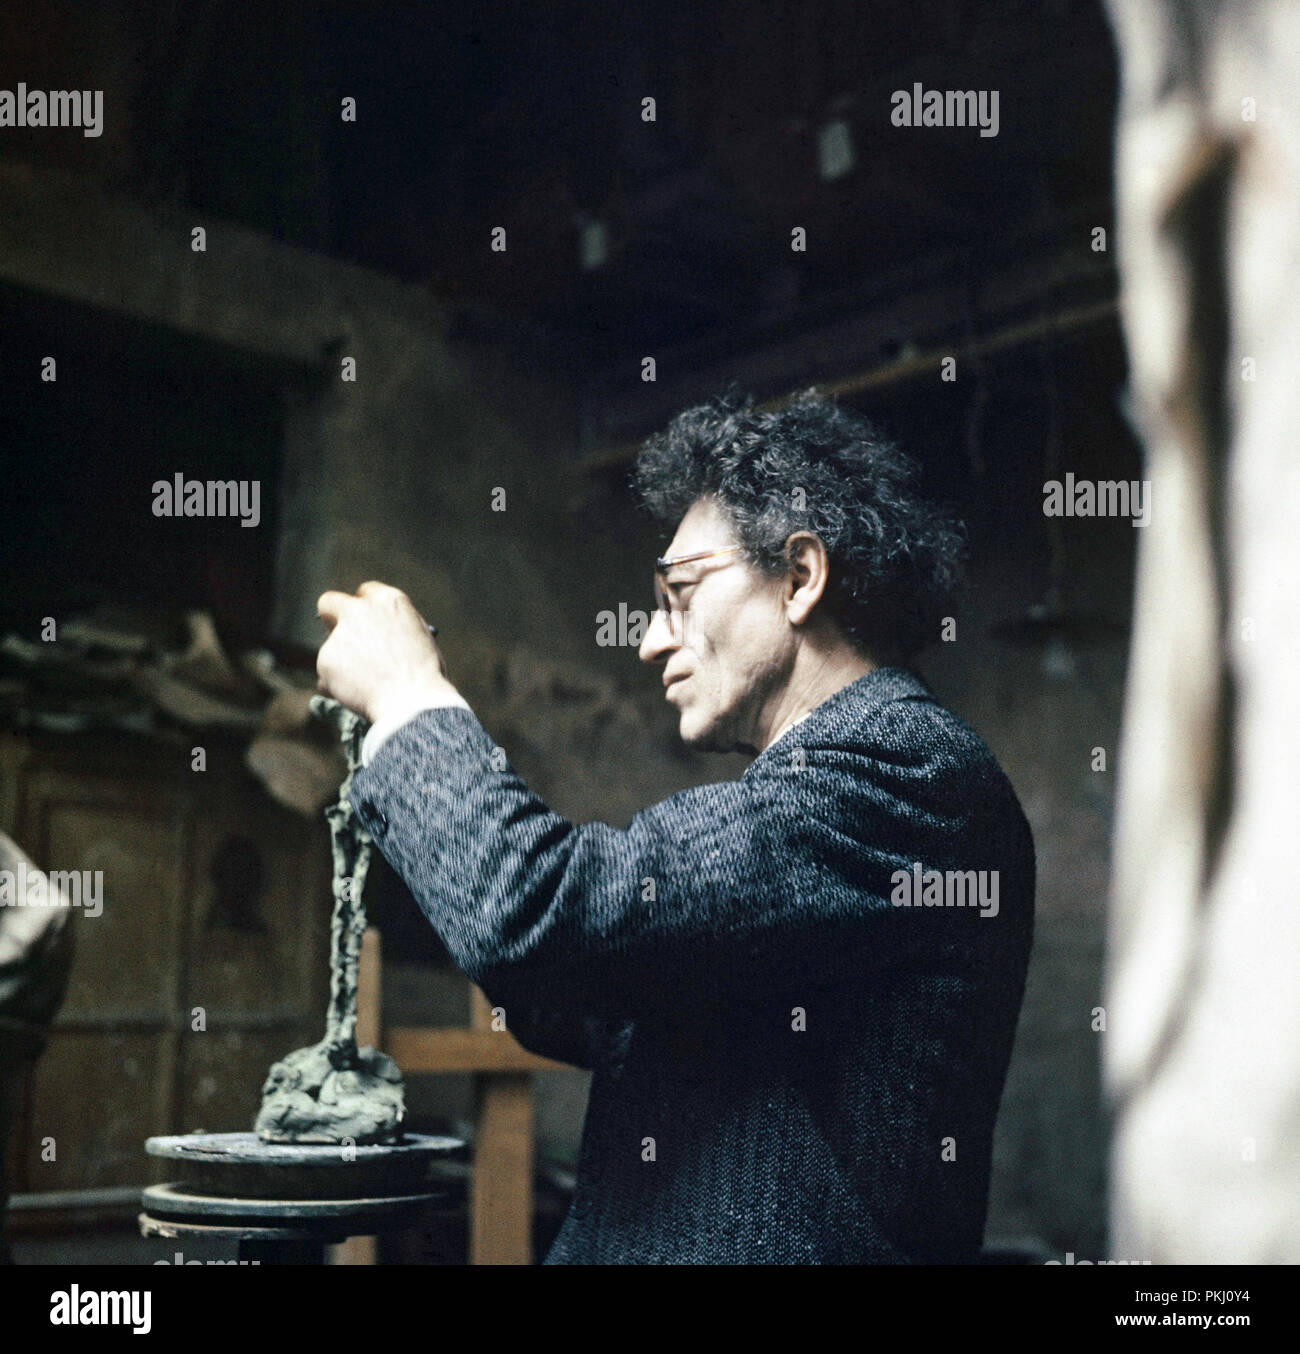 Alberto Giacometti, Schweizer Bildhauer, Maler und Grafiker, in seinem  Atelier in Paris, Frankreich 1962. Swiss sculptor, painter and graphic  artist Alberto Giacometti at his studio in Paris, France 1962 Stock Photo -  Alamy